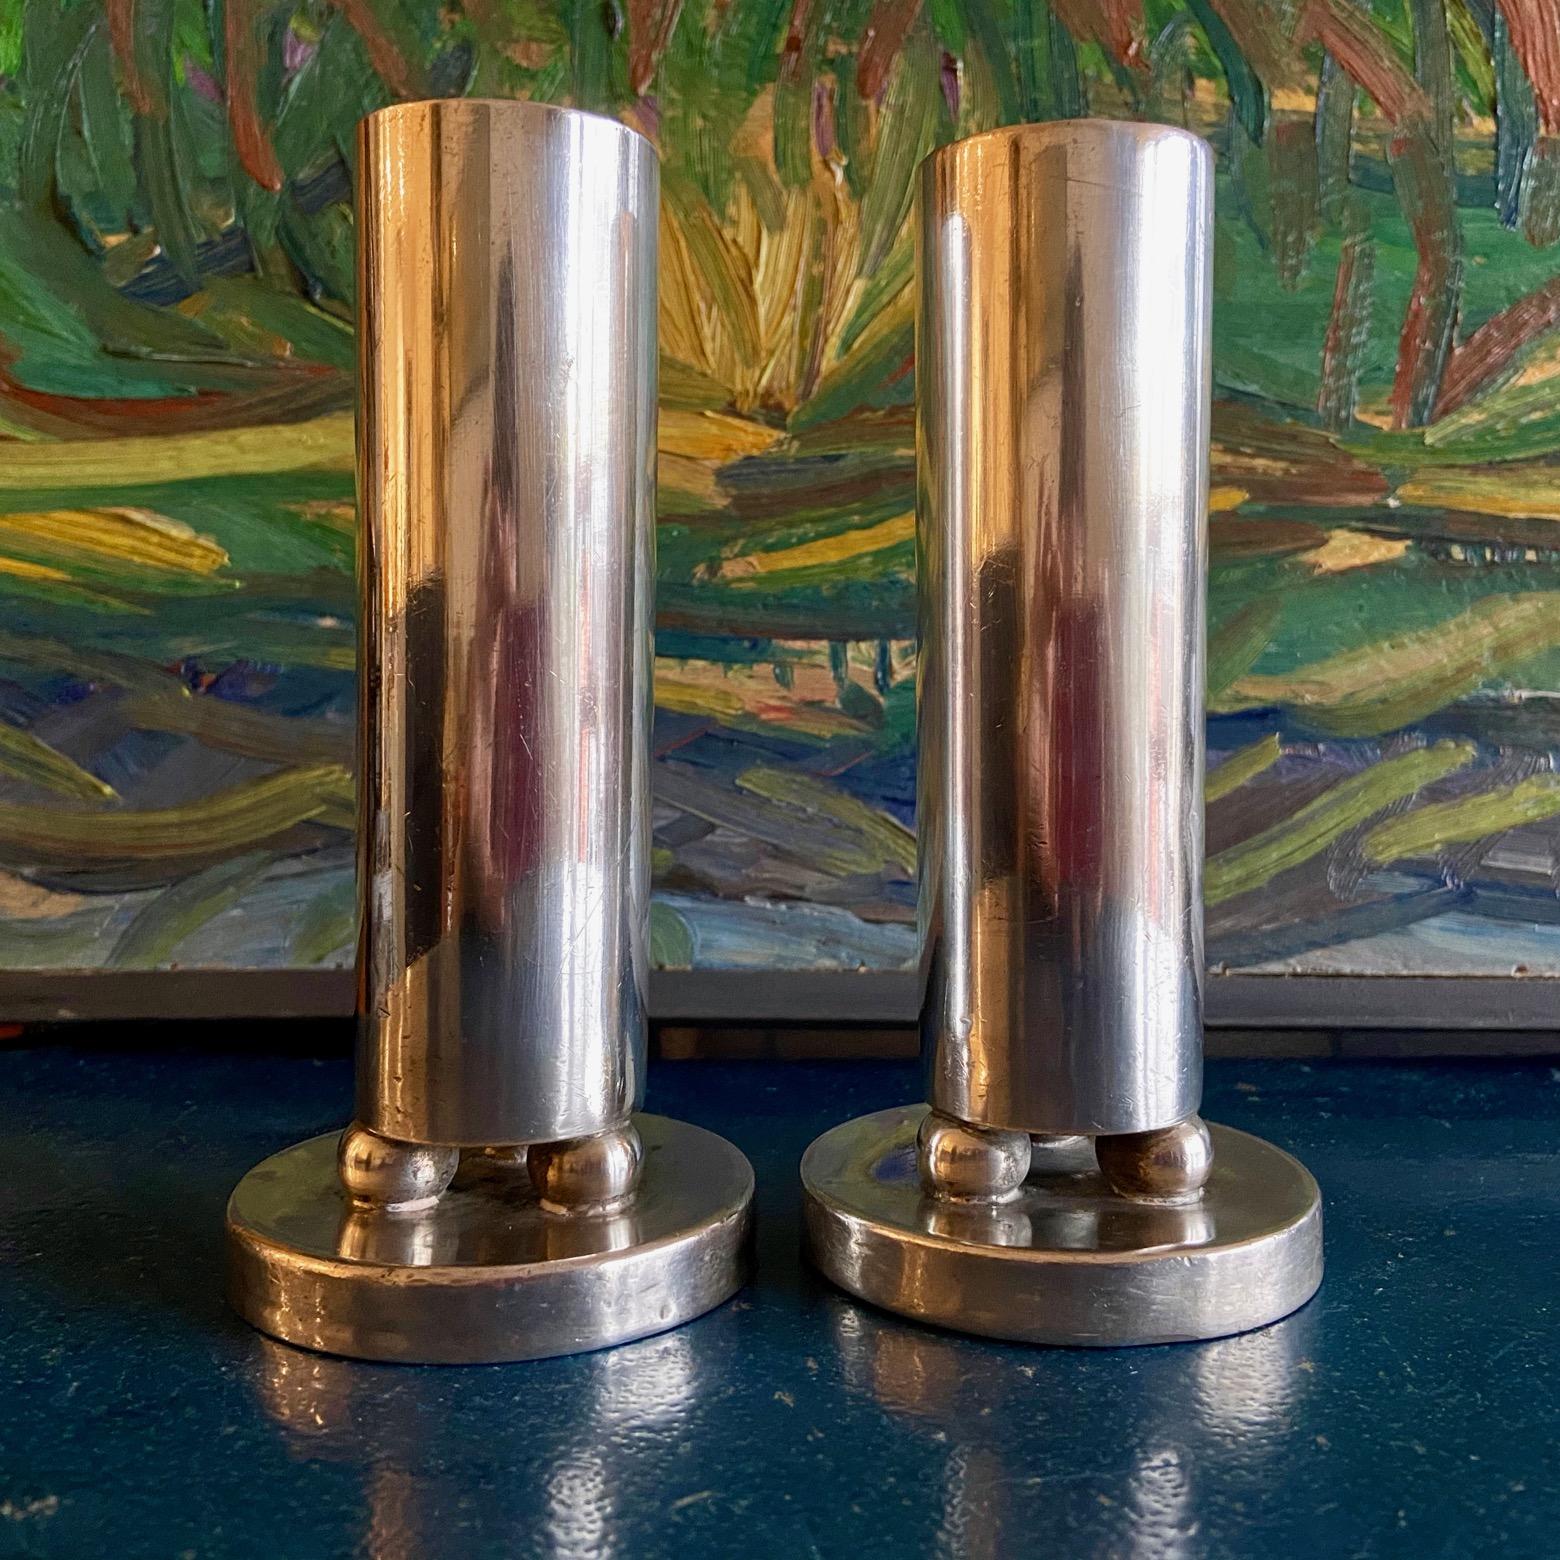 Ein ungewöhnliches Paar versilberter Soliflores-Vasen / Kerzenhalter mit ungewöhnlichem geometrischen Design, von Arthur Krupp, Mailand, und wahrscheinlich von Gio Ponti entworfen. 
Sie können auch als Kerzenhalter für große Kerzen verwendet